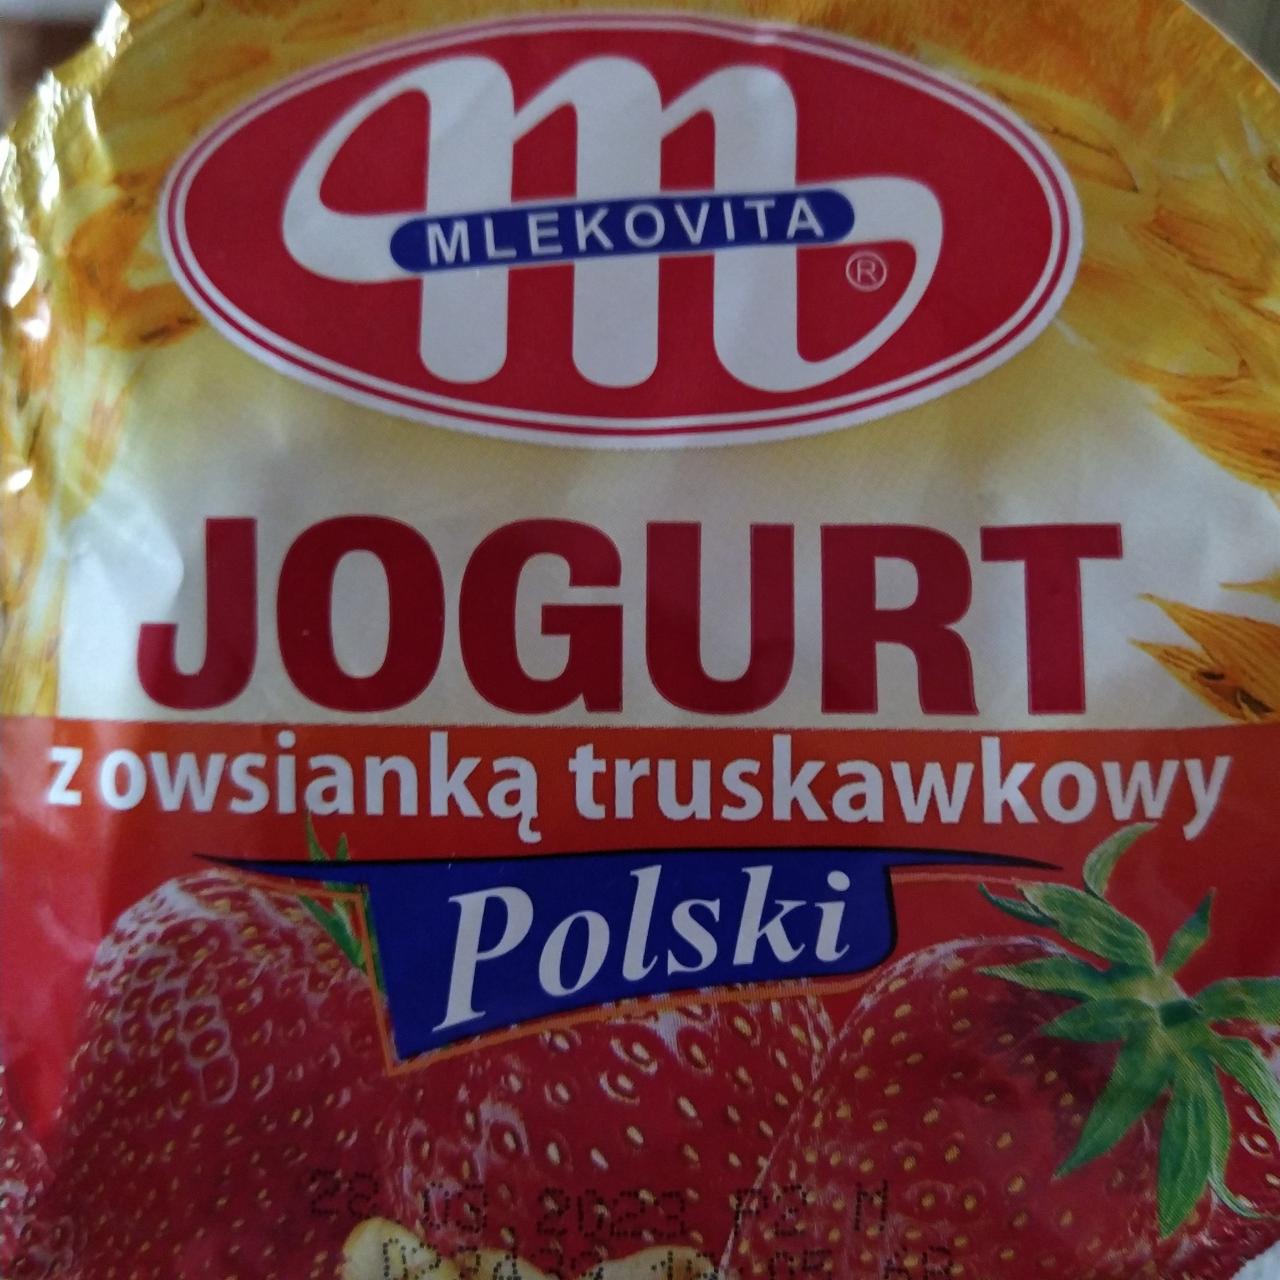 Fotografie - Jogurt z owsianka truskawkowy Polski Mlekovita